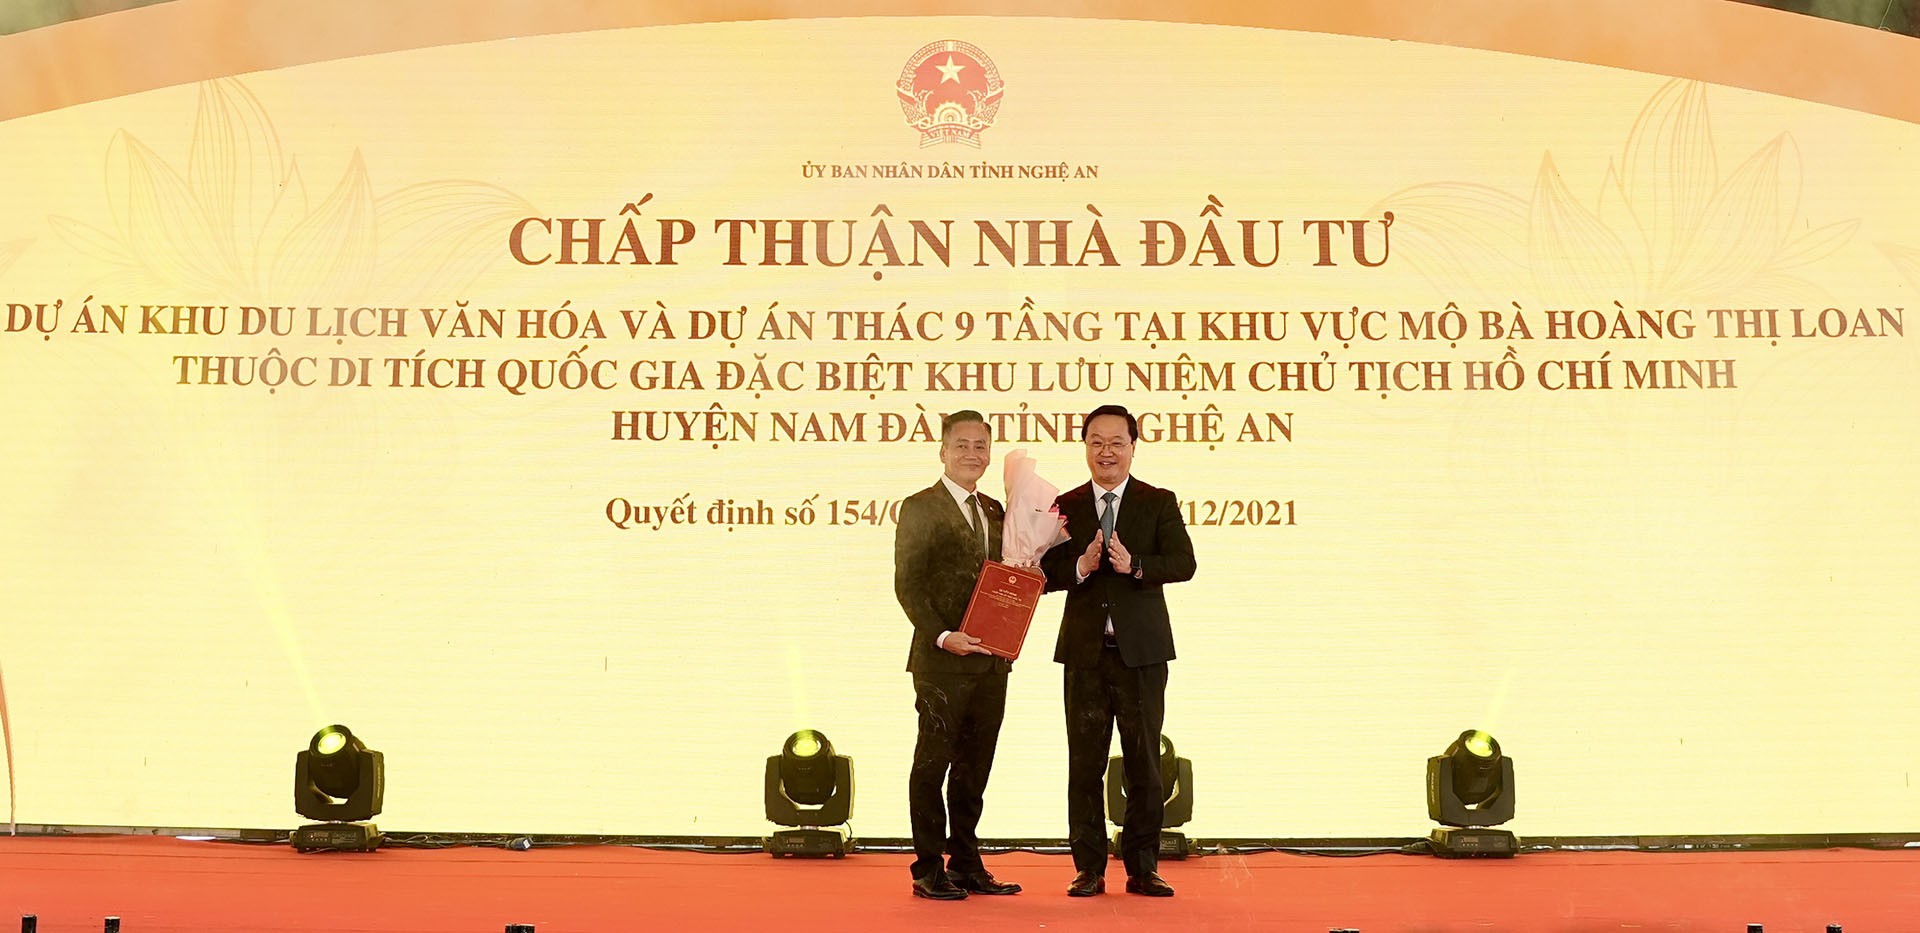 Ông Nguyễn Đức Trung, Phó Bí thư Tỉnh uỷ, Chủ tịch UBND tỉnh Nghệ An (bên phải) trao Quyết định chấp thuận Nhà đầu tư thực hiện dự án cho Ông Vũ Trọng Tuấn, Tổng Giám đốc Công ty cổ phần TMDV Tràng Thi (đơn vị thành viên của Tập đoàn T&T Group) (bên trái)